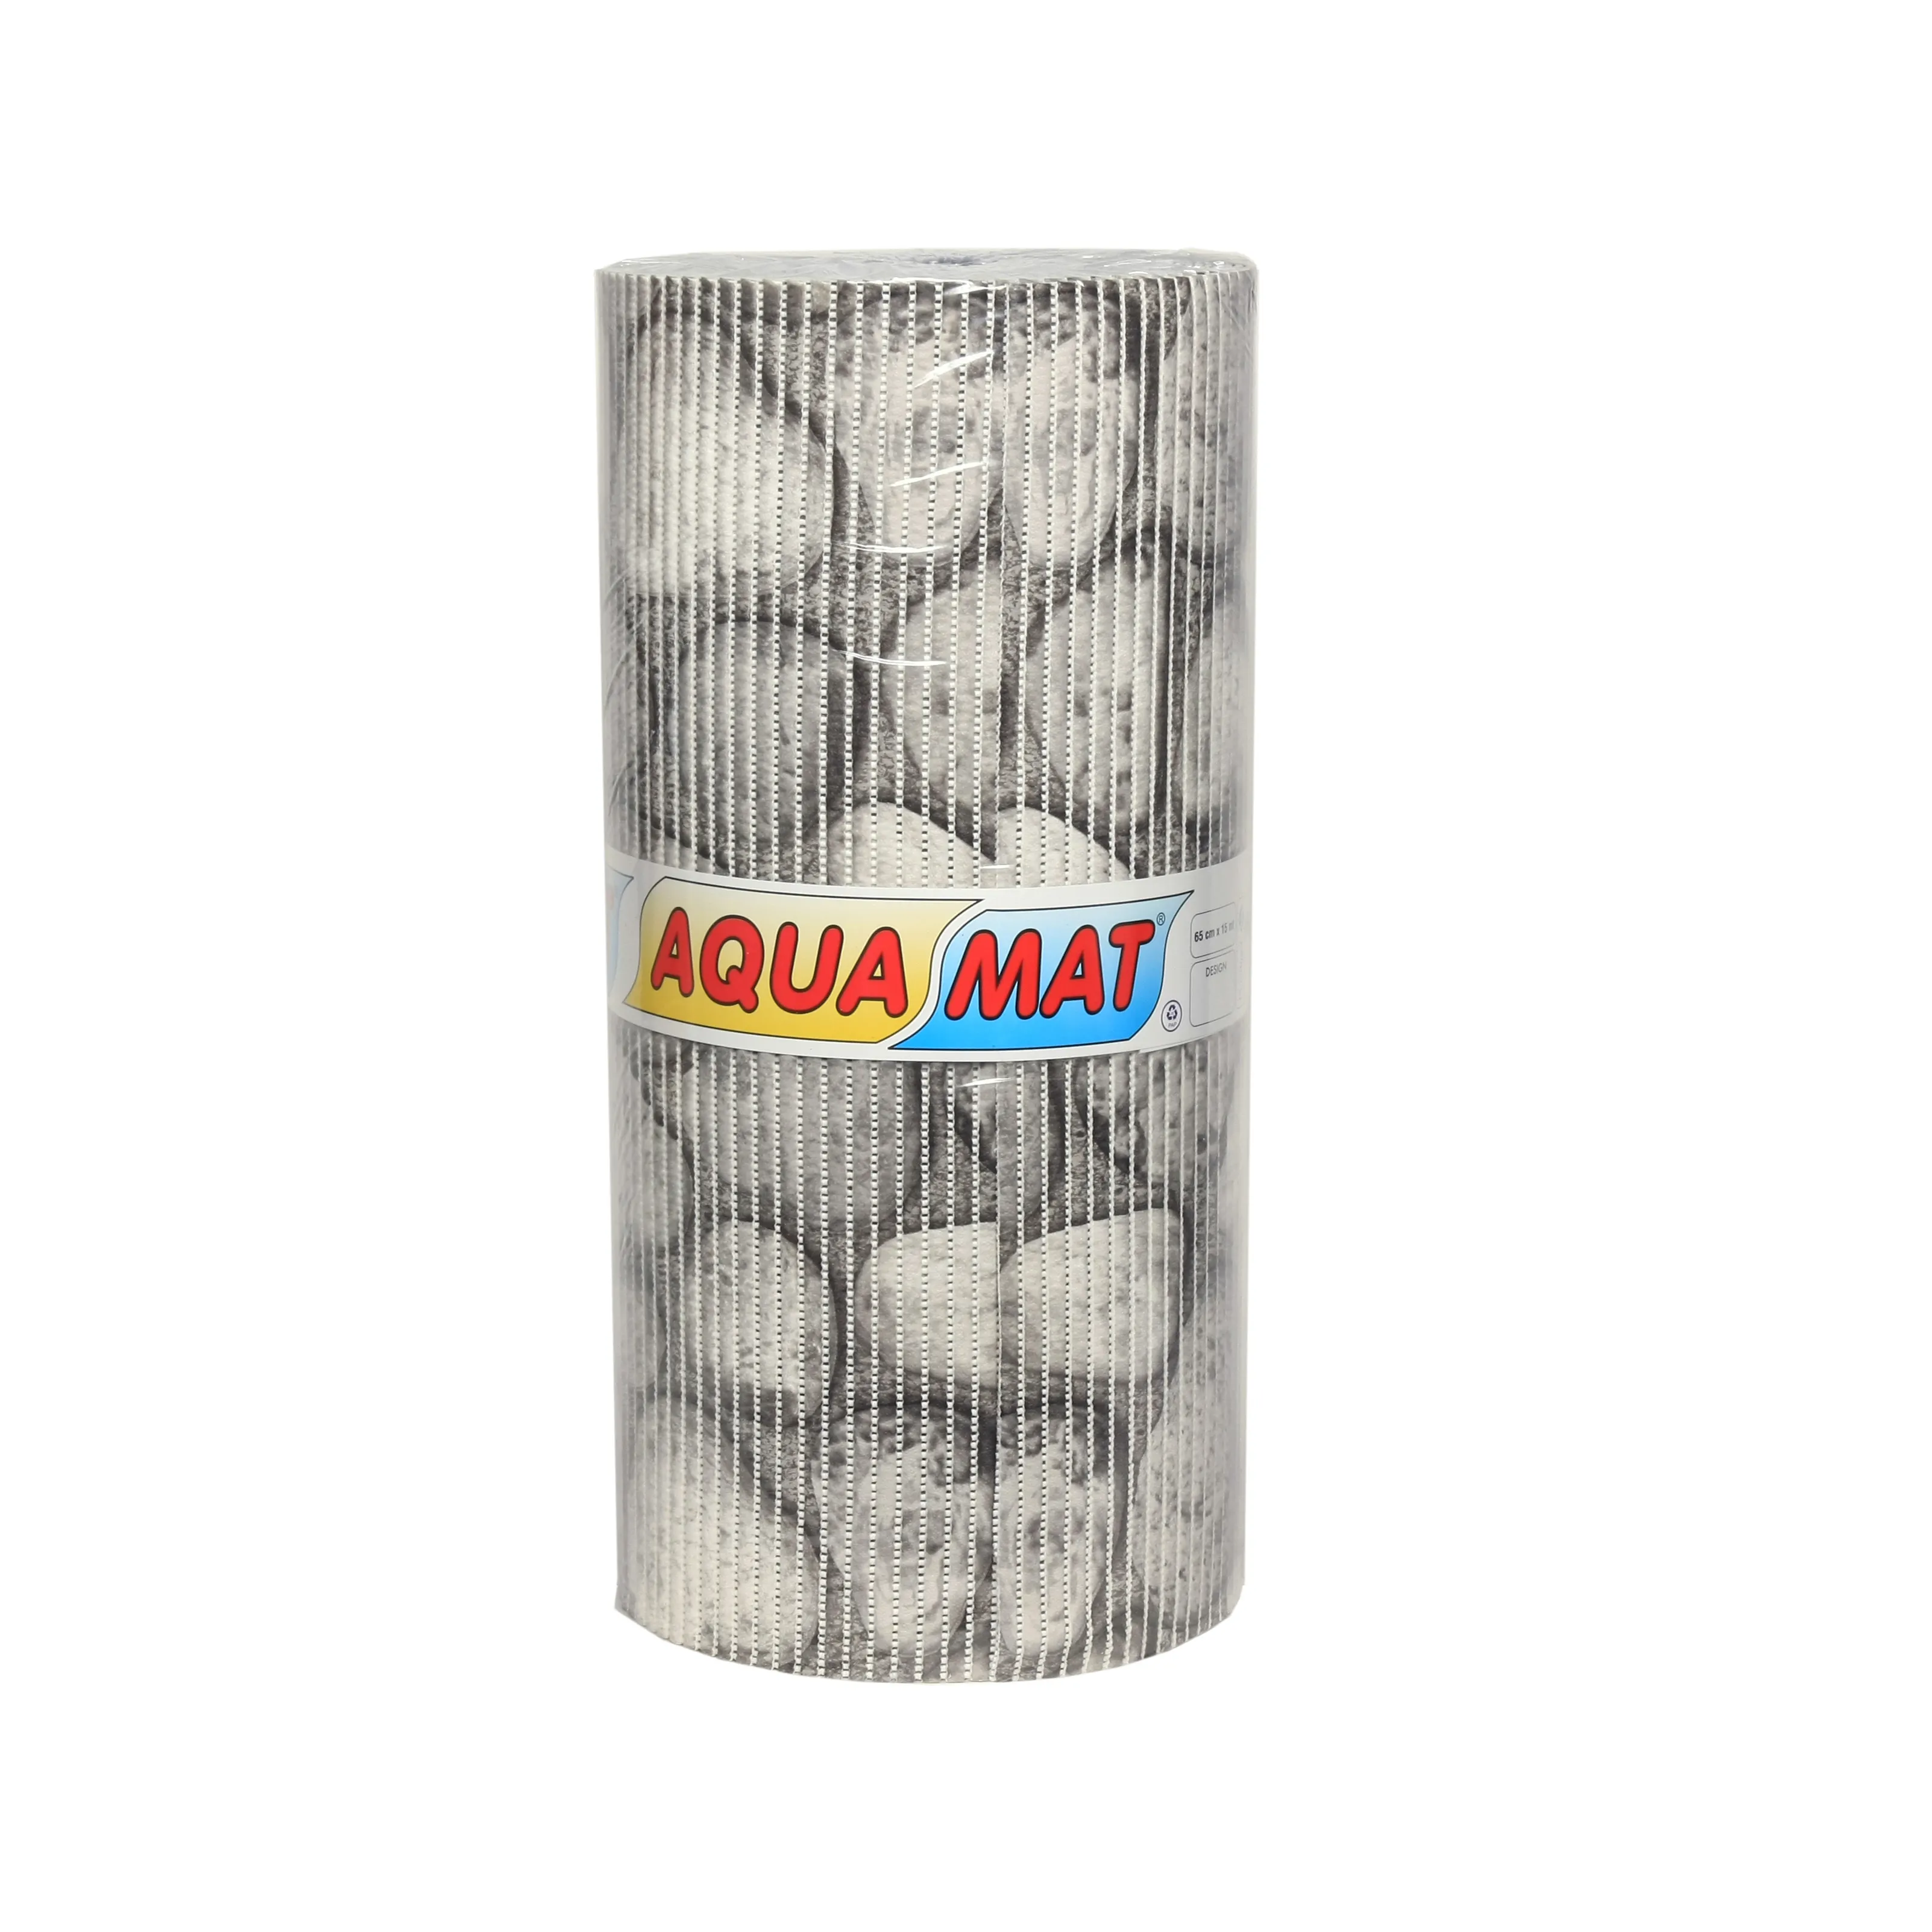 Alfombrilla Aqua de espuma de PVC impresa en Piedra de adoquín ecológica 65x1500cm con buena calidad